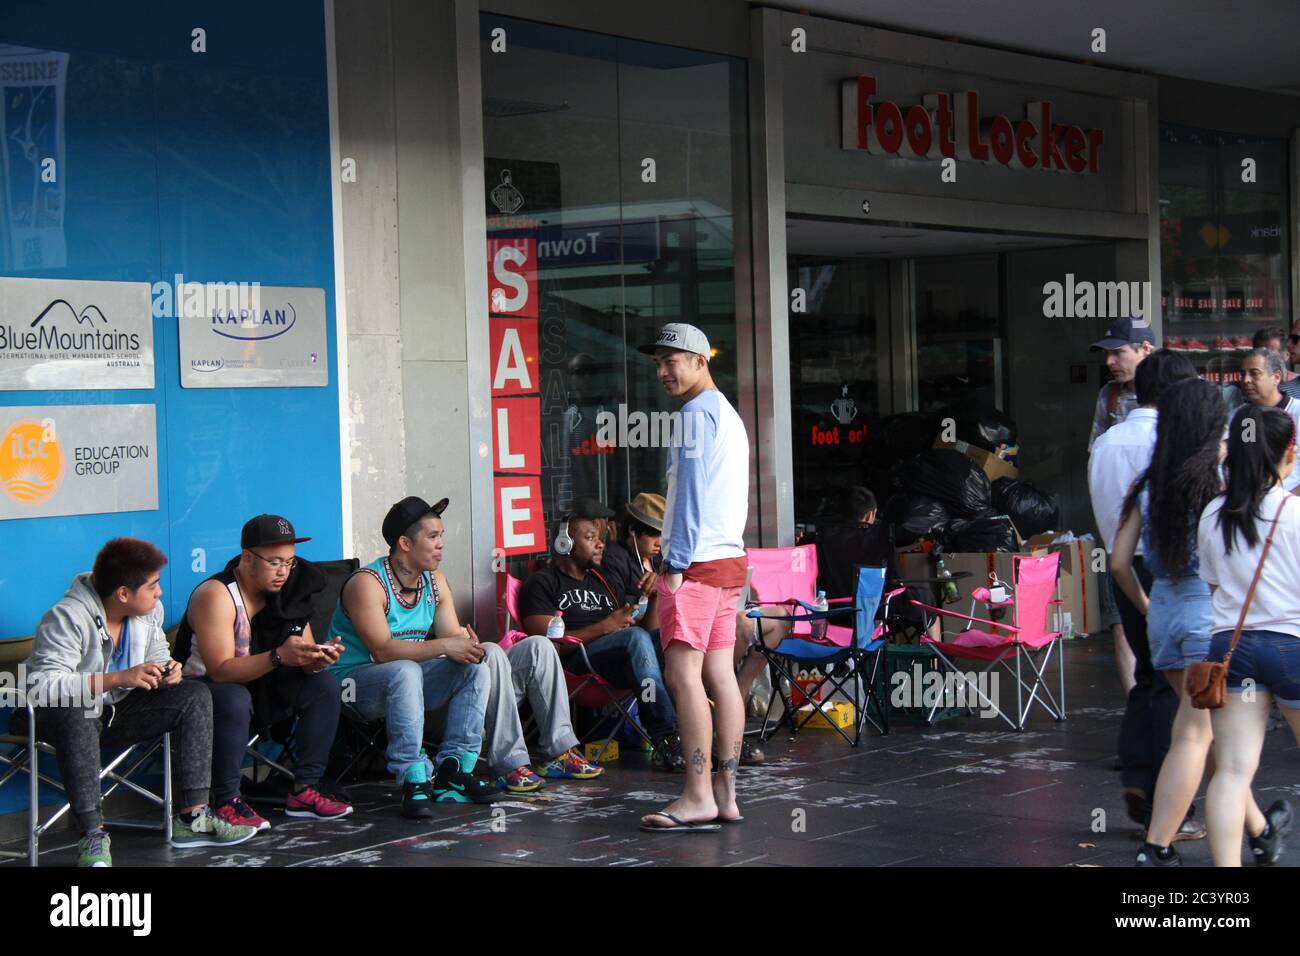 Les gens commencent à faire la queue devant foot Locker sur George Street  Sydney pour le Nike Air Jordan 3 Lab 5. Certains dans la file d'attente  portent des baskets ait Jordan